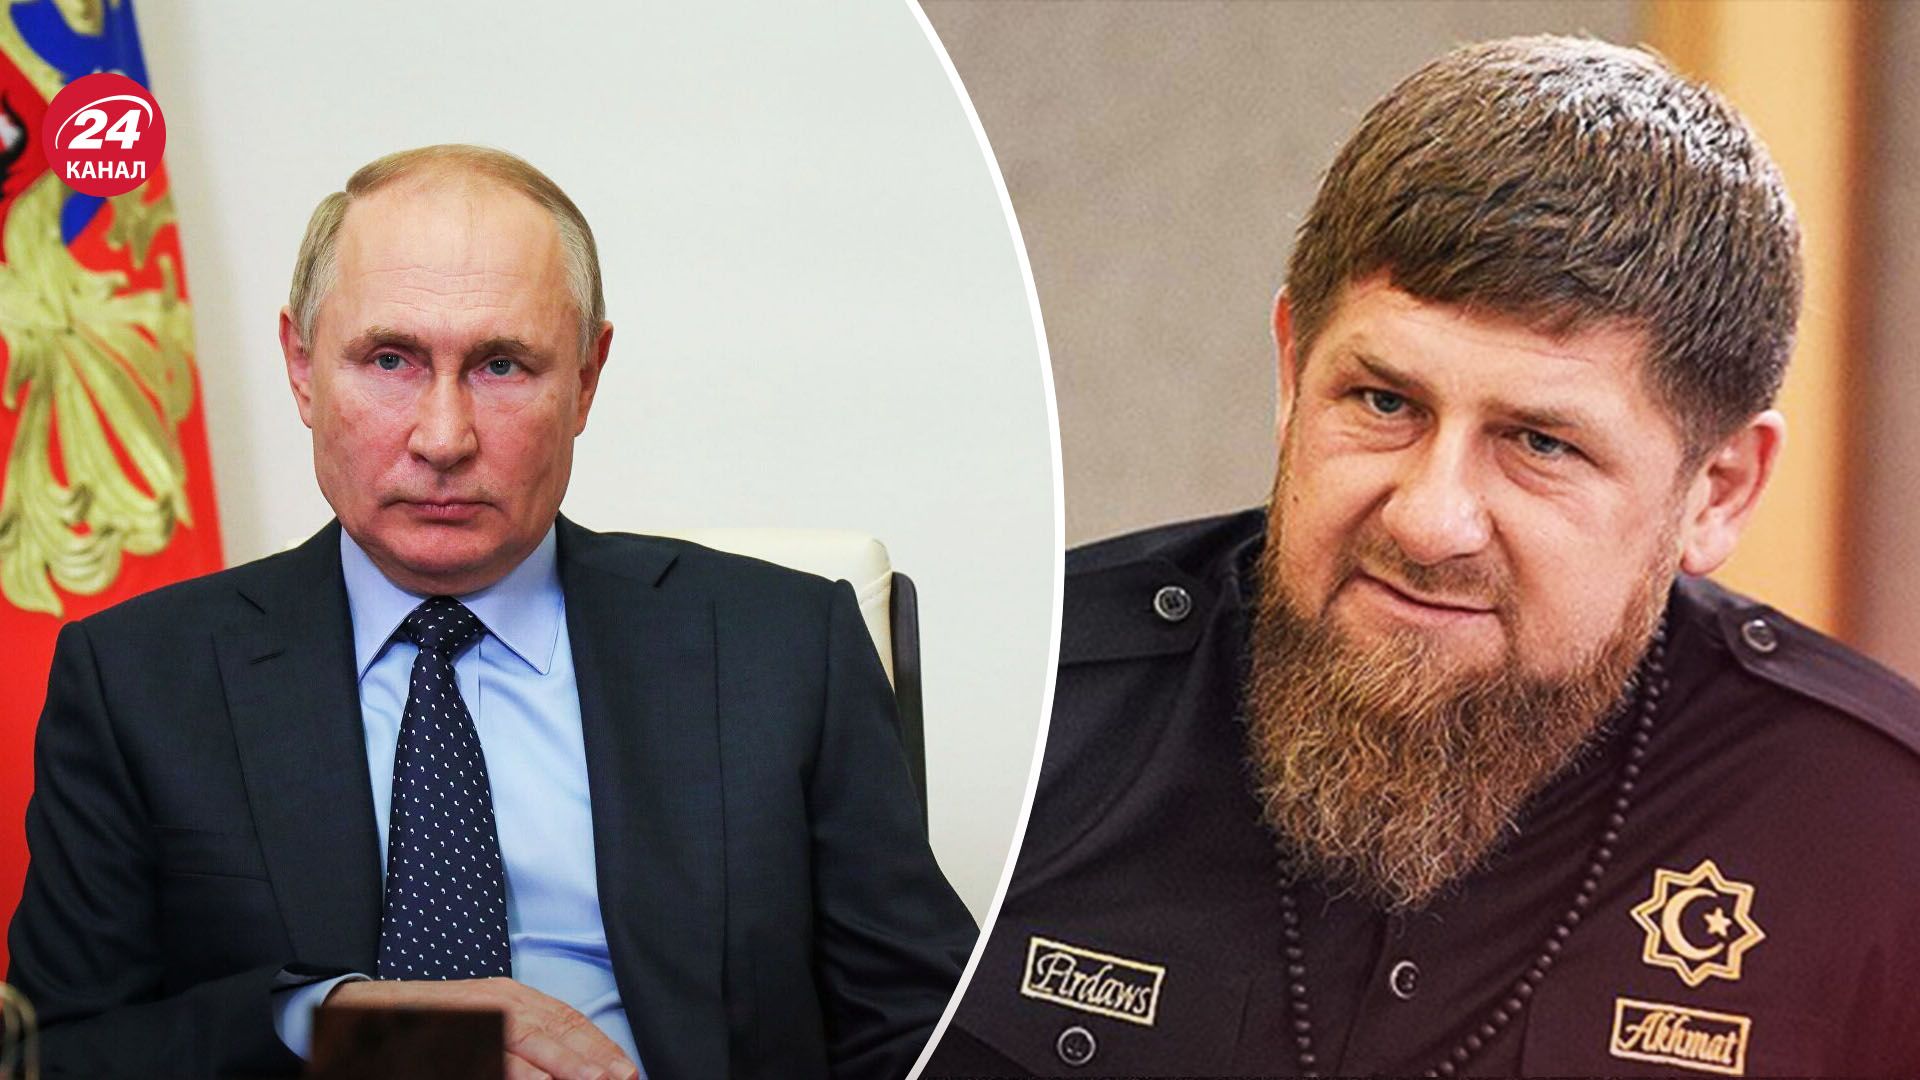 Сын Кадырова избил заключенного за сожжение Корана - как инцидент в Чечне навредит Путину - 24 Канал